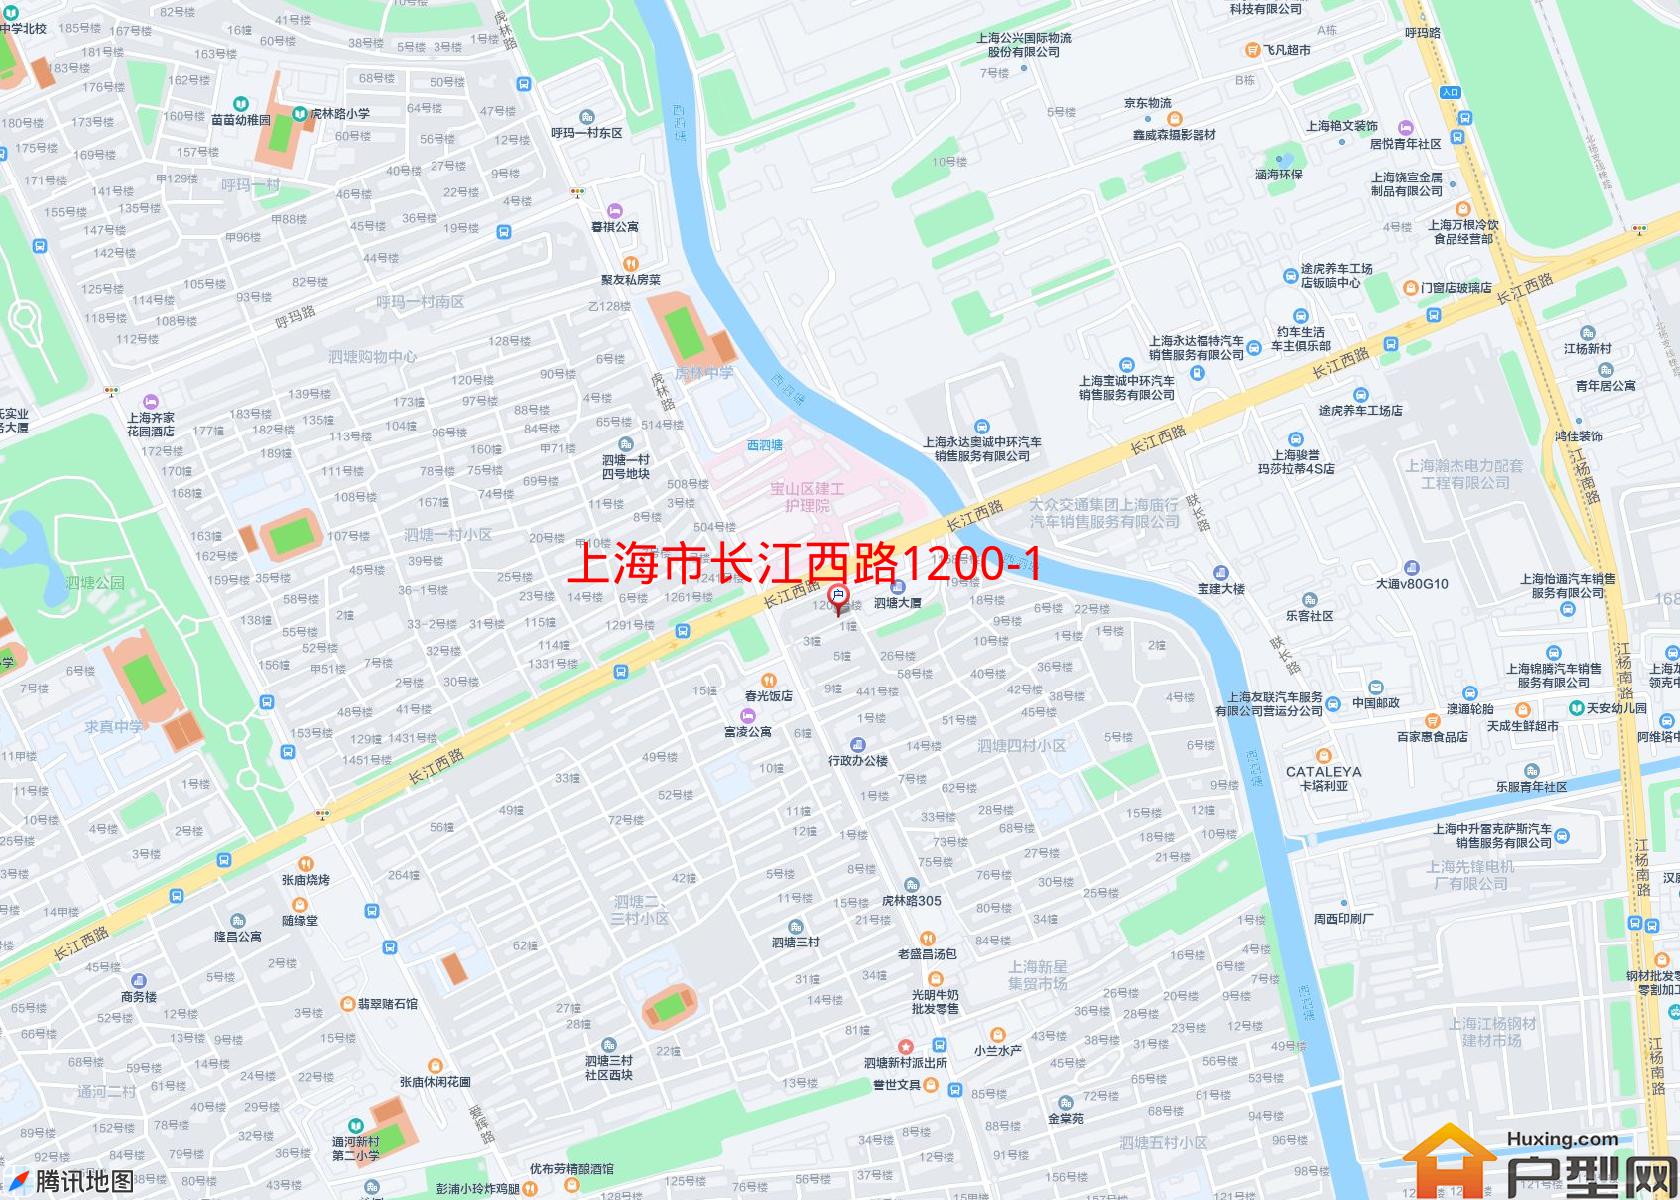 长江西路1200-1220号小区小区 - 户型网